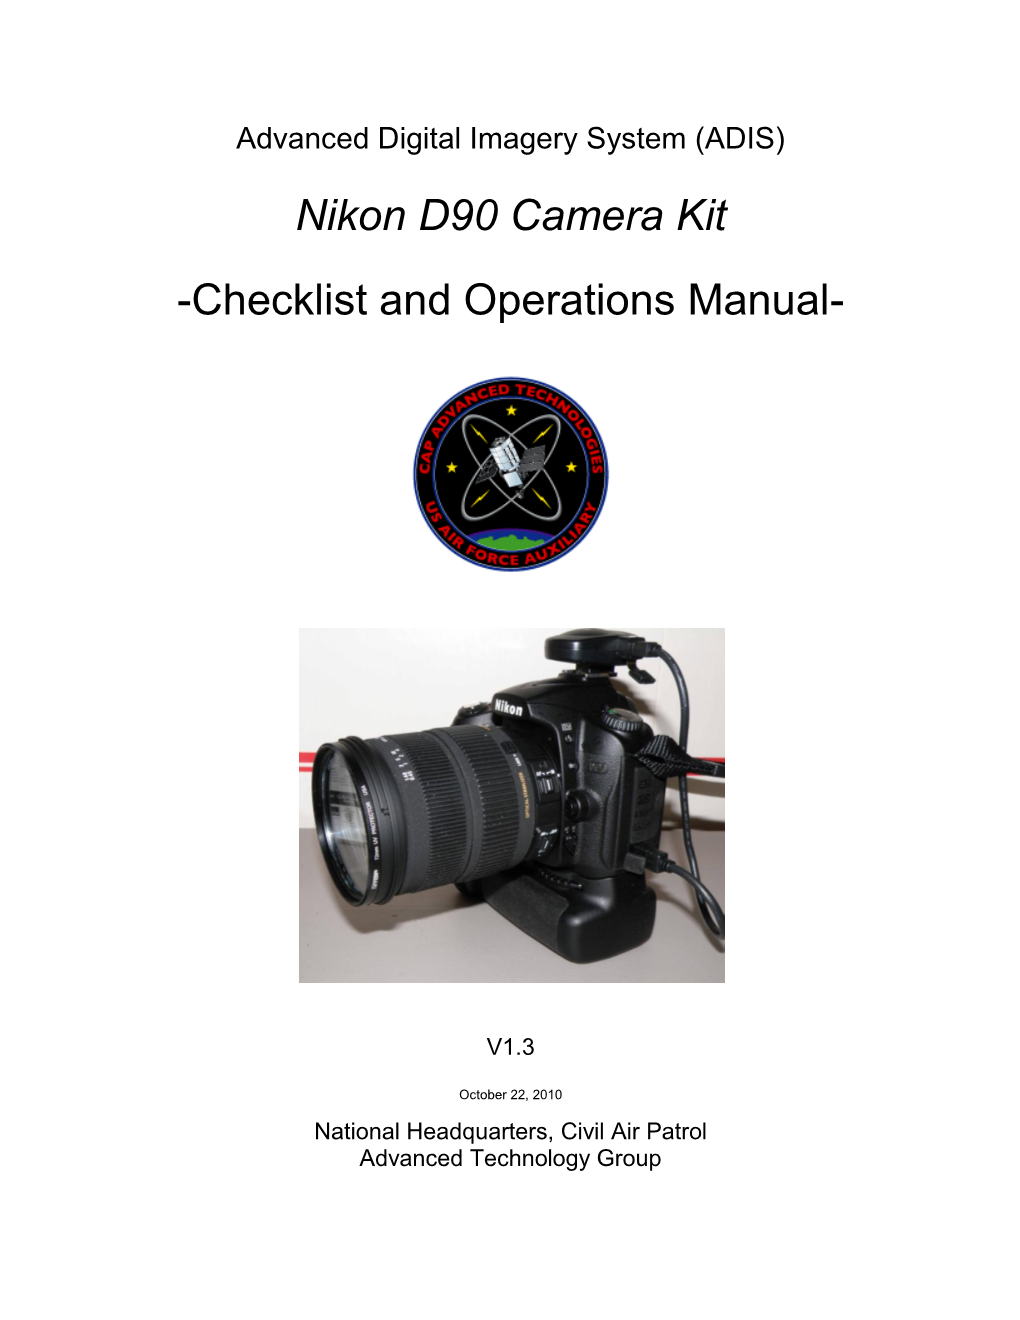 Nikon D90 Camera Kit